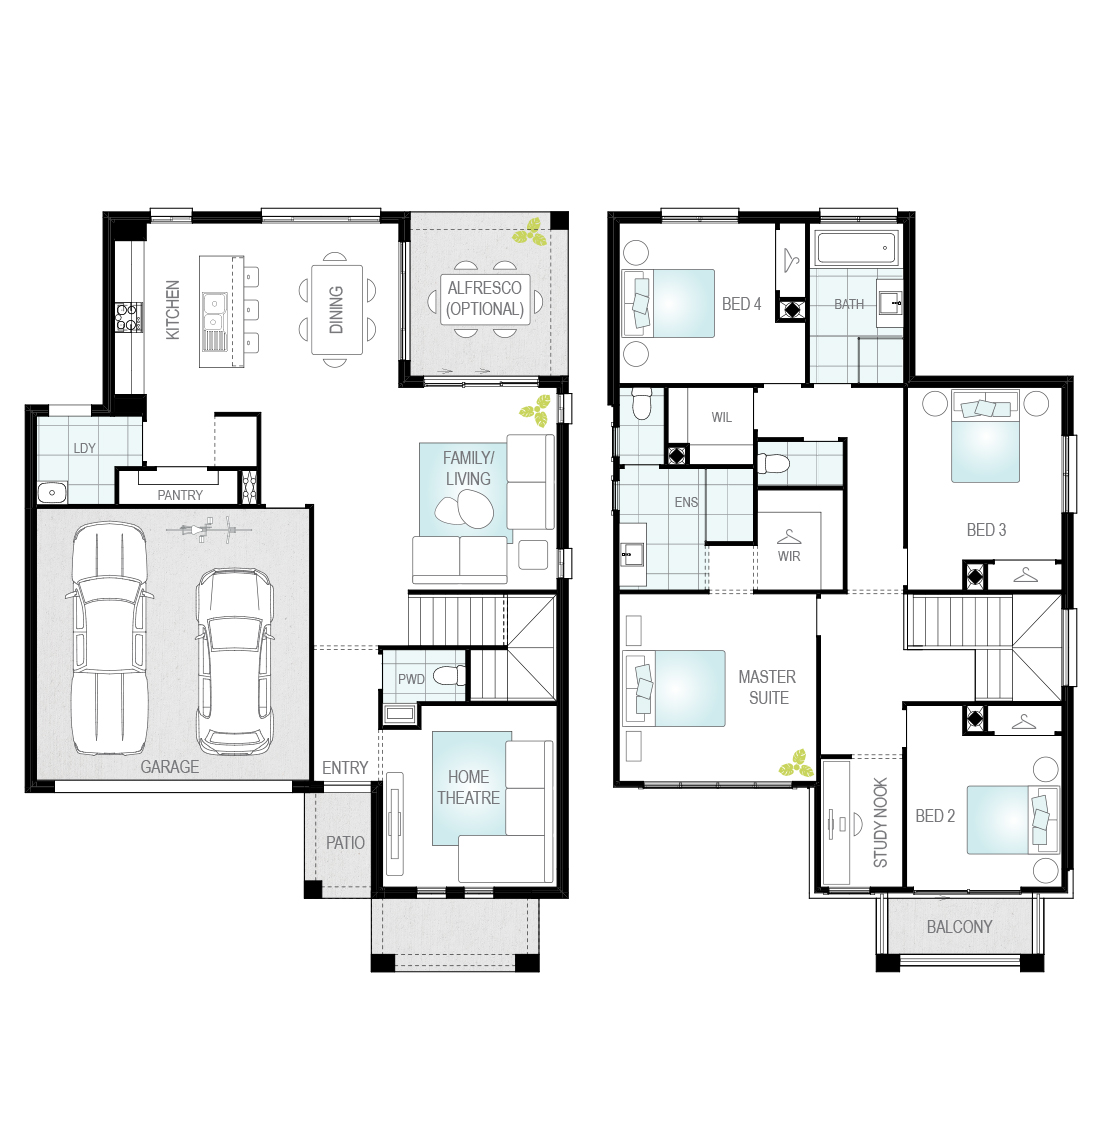 Lurento One - Single Storey Floor Plan - McDonald Jones